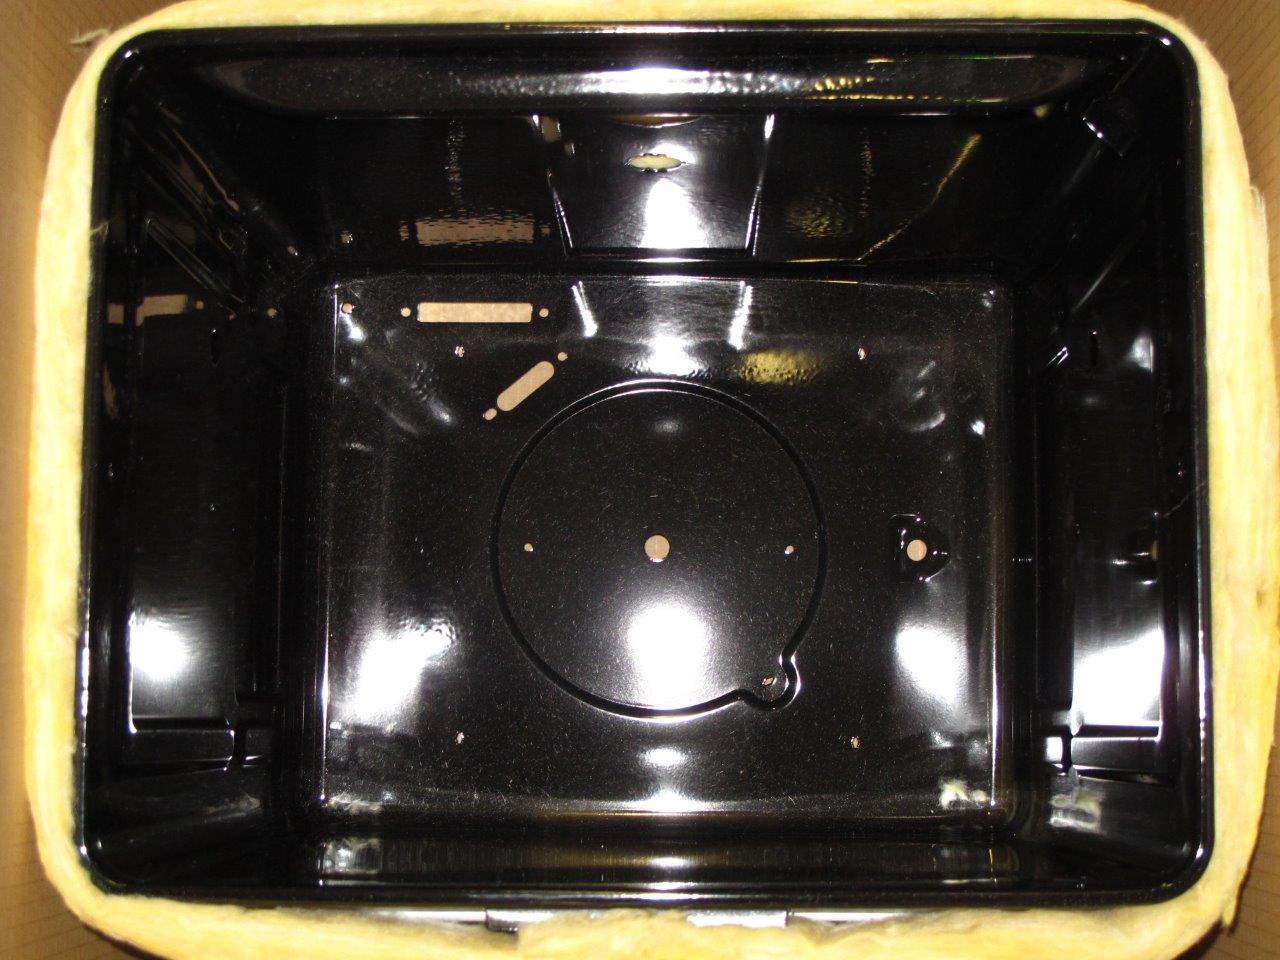 Oven chamber unit.1*3.4D Hansa BOEI68230020